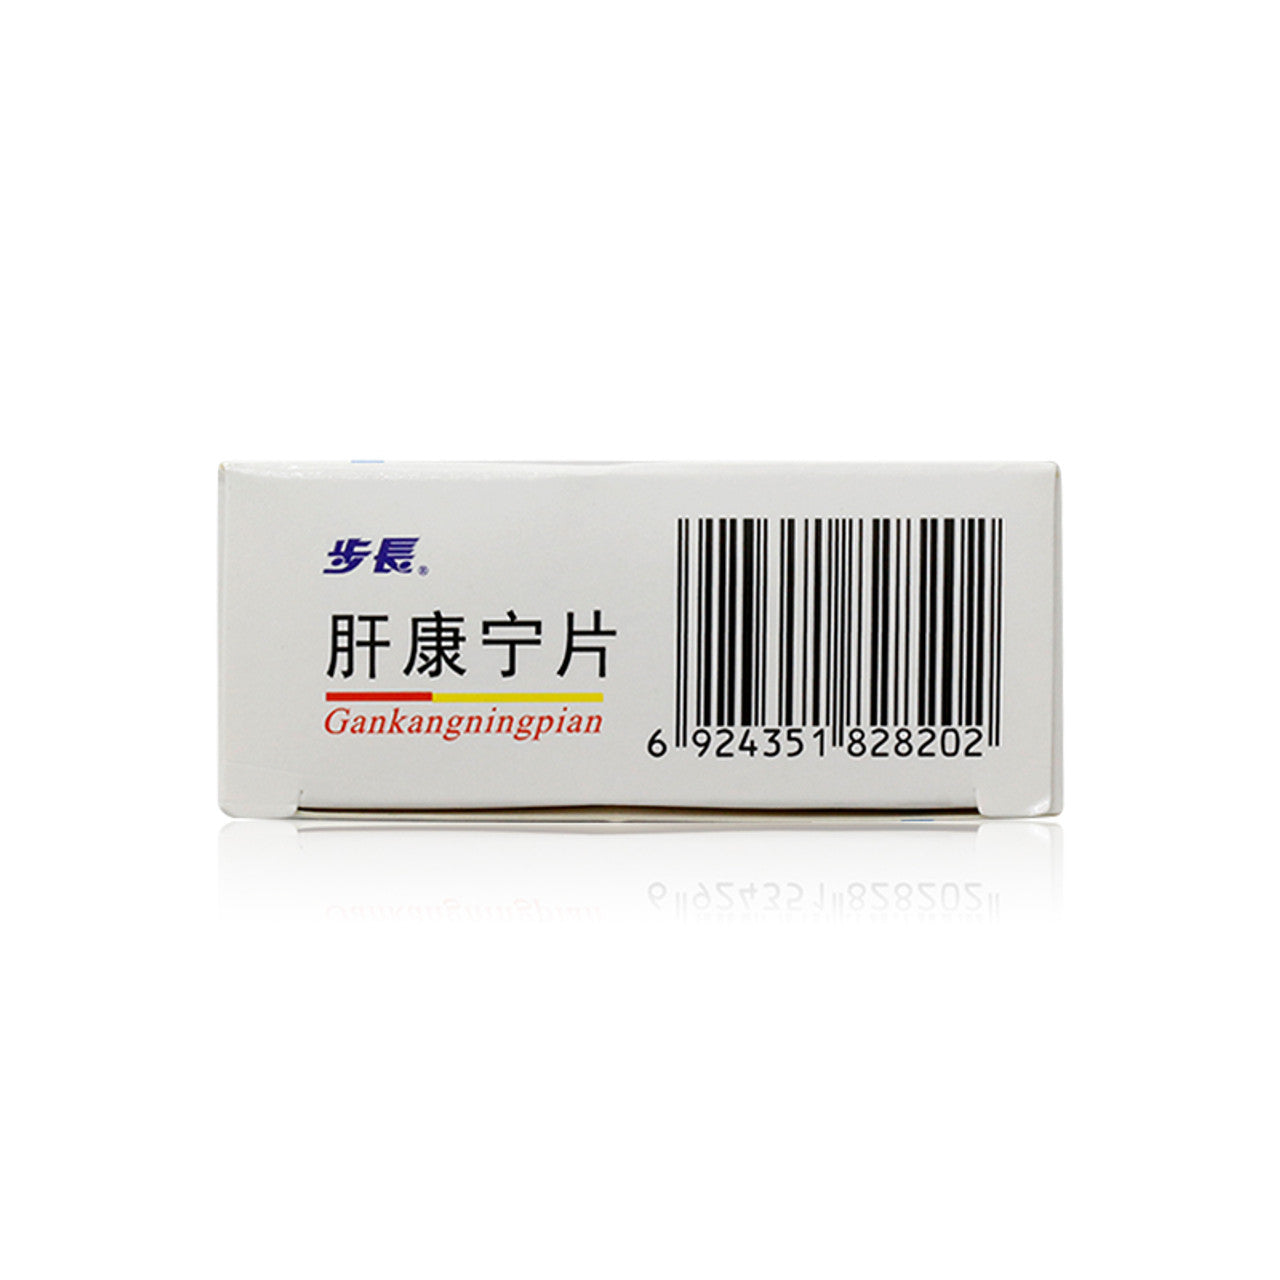 China Herb. Brand BUZHANG. Gankangning Pian or GANKANGNINGPIAN or Gan Kang Ning Pian or  Gankangning Tablets or  Gan Kang Ning Tablets for acute and chronic hepatitis